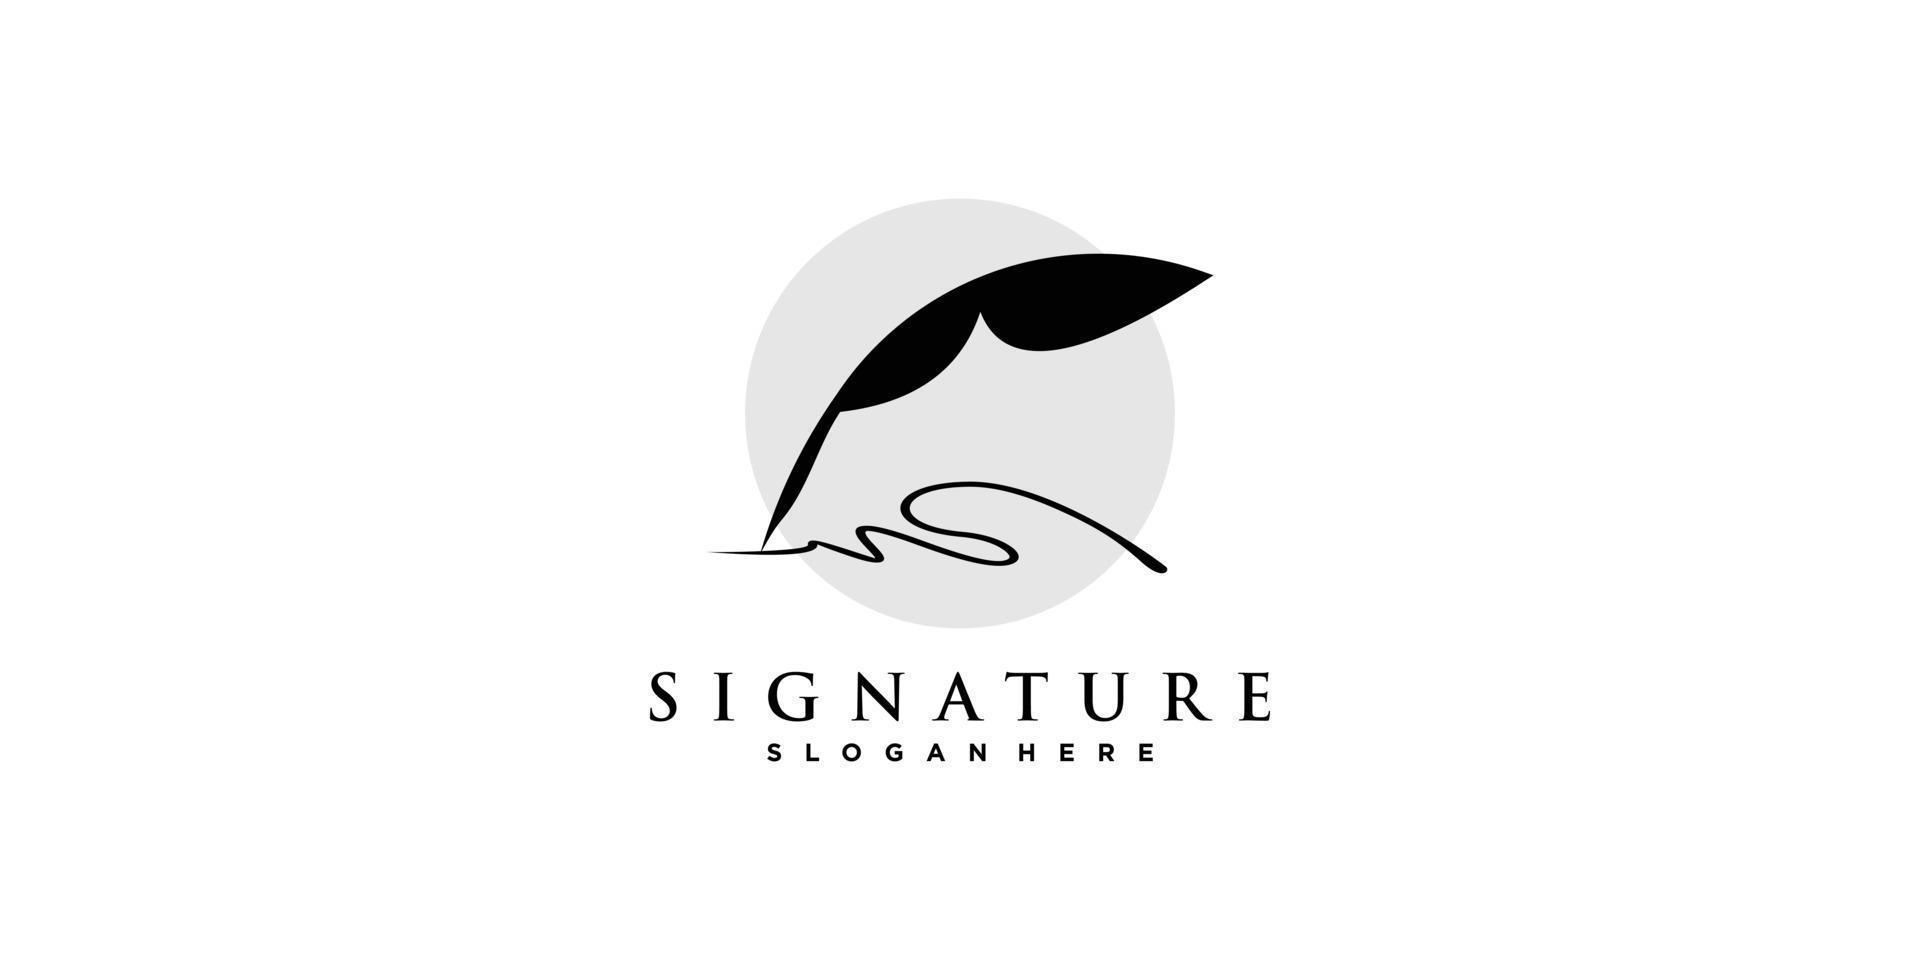 résumé du logo de signature avec vecteur premium de style créatif